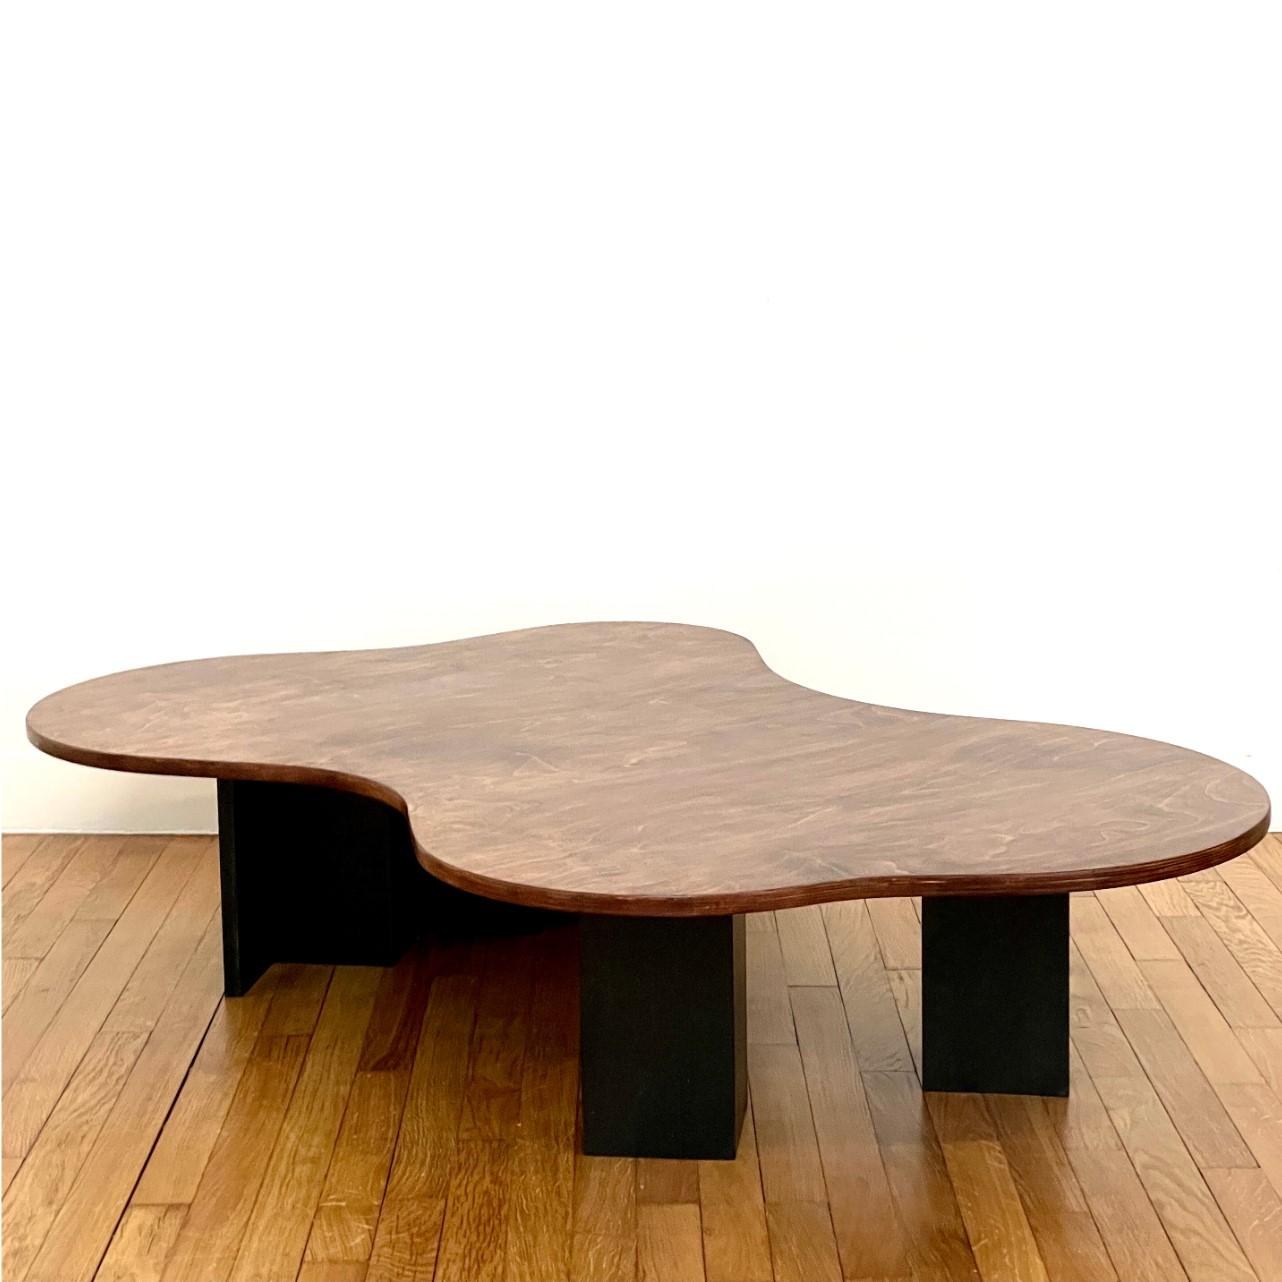 Einzigartiger Überlauftisch von Goons 
Abmessungen:  B 97 x T 147 x H 33 cm
MATERIALIEN: Holz
Die Abmessungen können um +/- 10 cm angepasst werden.

Goons hat seinen Sitz in Paris, Frankreich. Alle ihre Entwürfe sind aus Holz gefertigt.